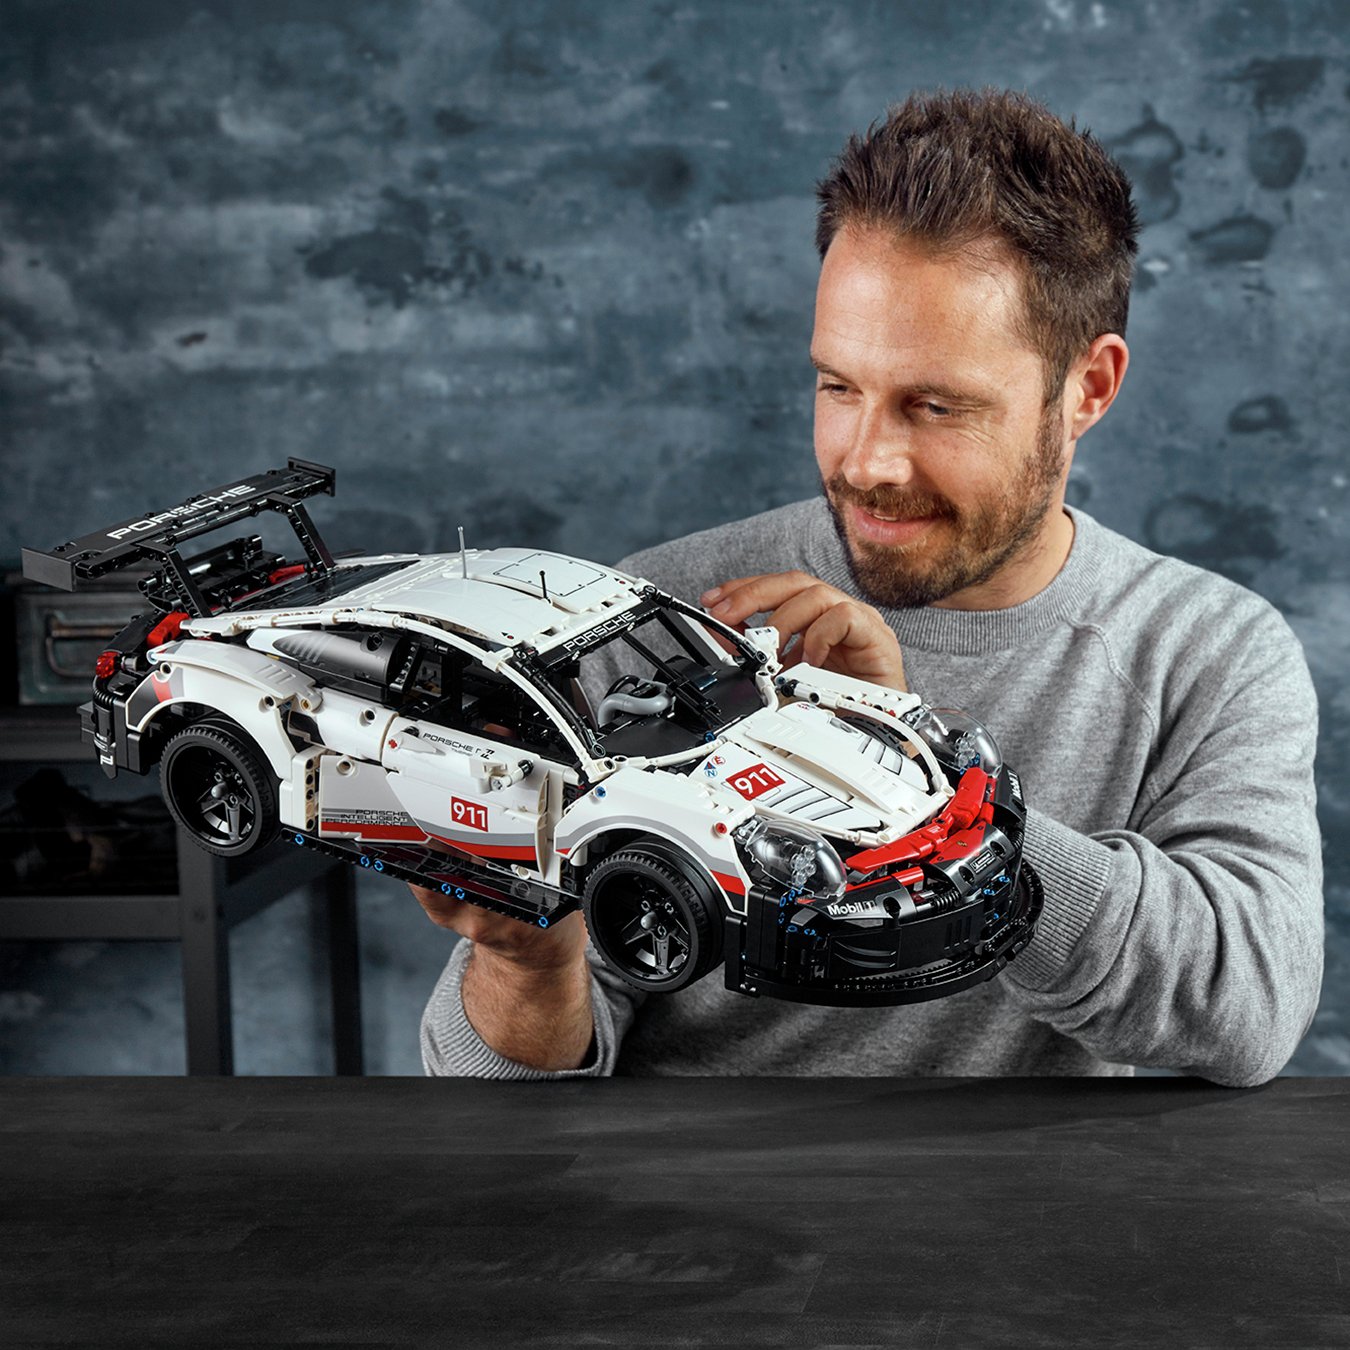 Lego Technic Porsche 911 Rsr Car Replica Model Reviews 8156